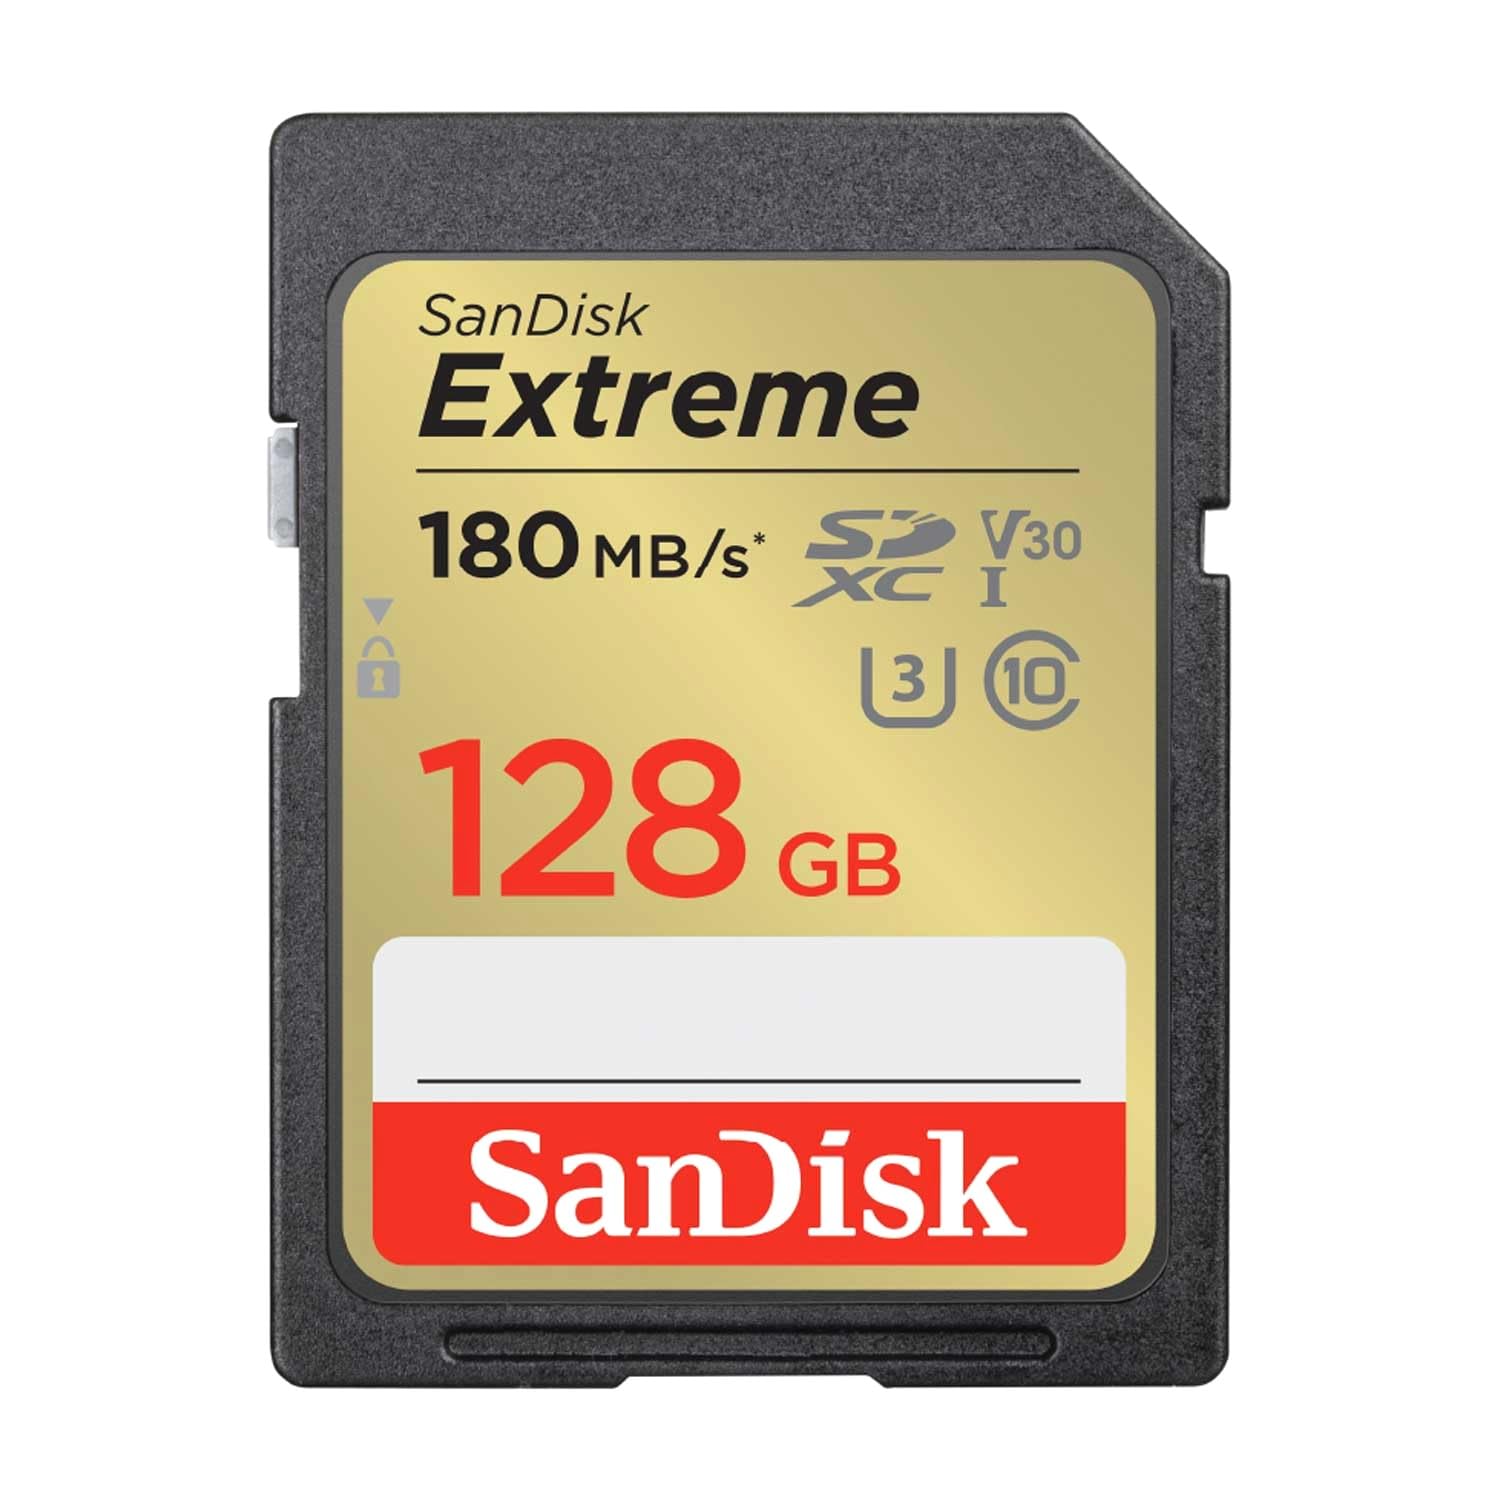 サンディスク 正規品 SDカード 128GB SDXC Class10 UHS-I U3 V30 SanDisk Extreme SDSDXVA-128G-GHJIN 新パッケージ